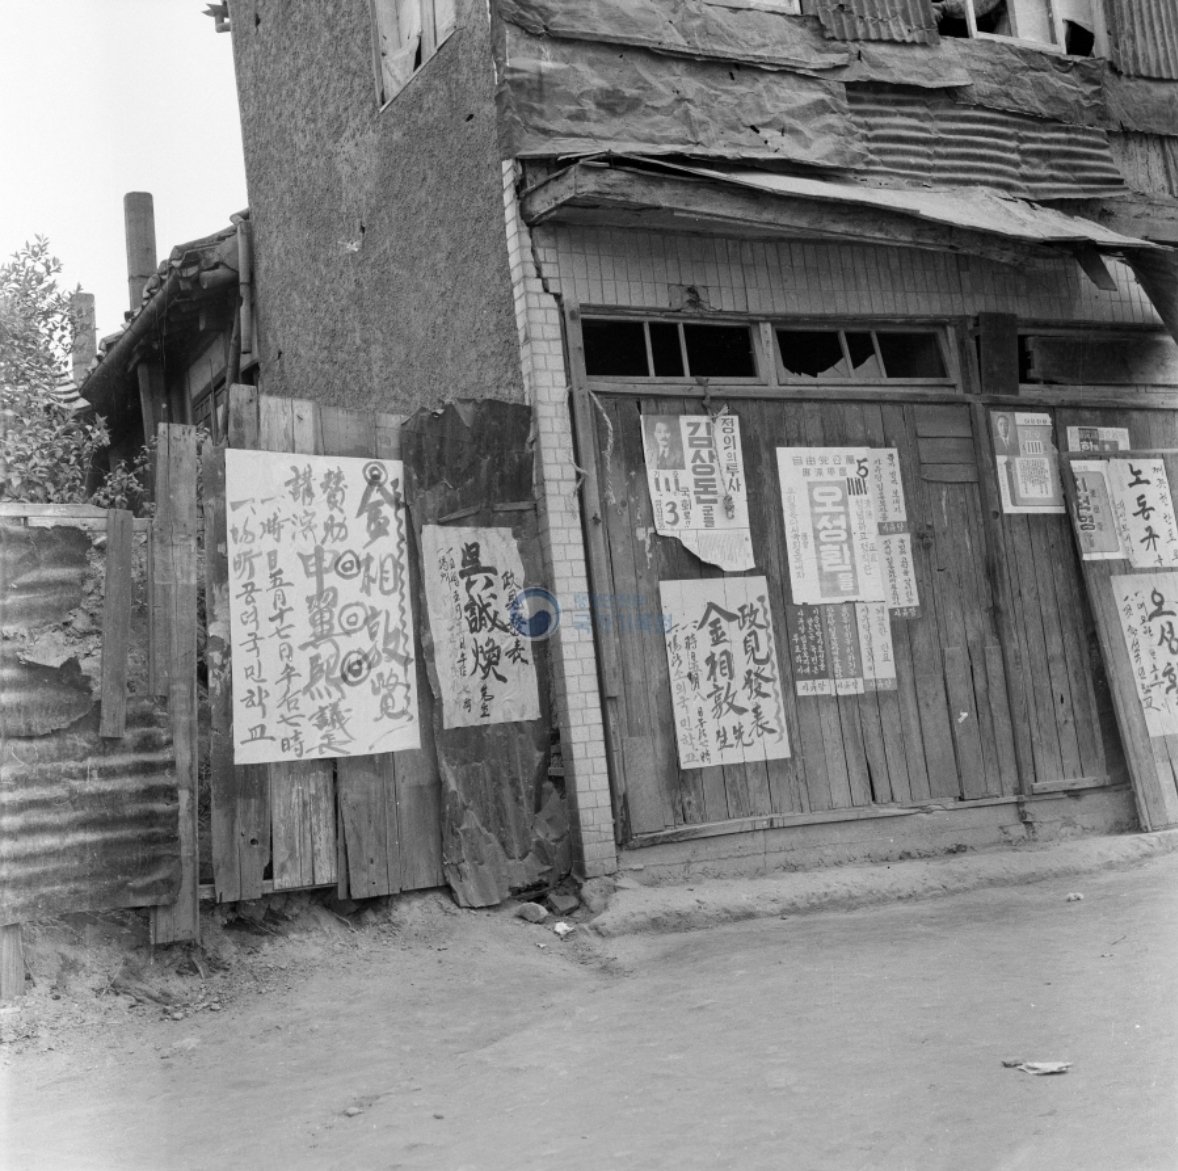 제3대 민의원 총선 1954년 5월 20일 제3대 민의원 총선거가 전국에서 실시되었다. 사진은 후보자들의 선거벽보가 붙어 있는 거리 풍경이다. [국가기록원, 오늘의 기록]